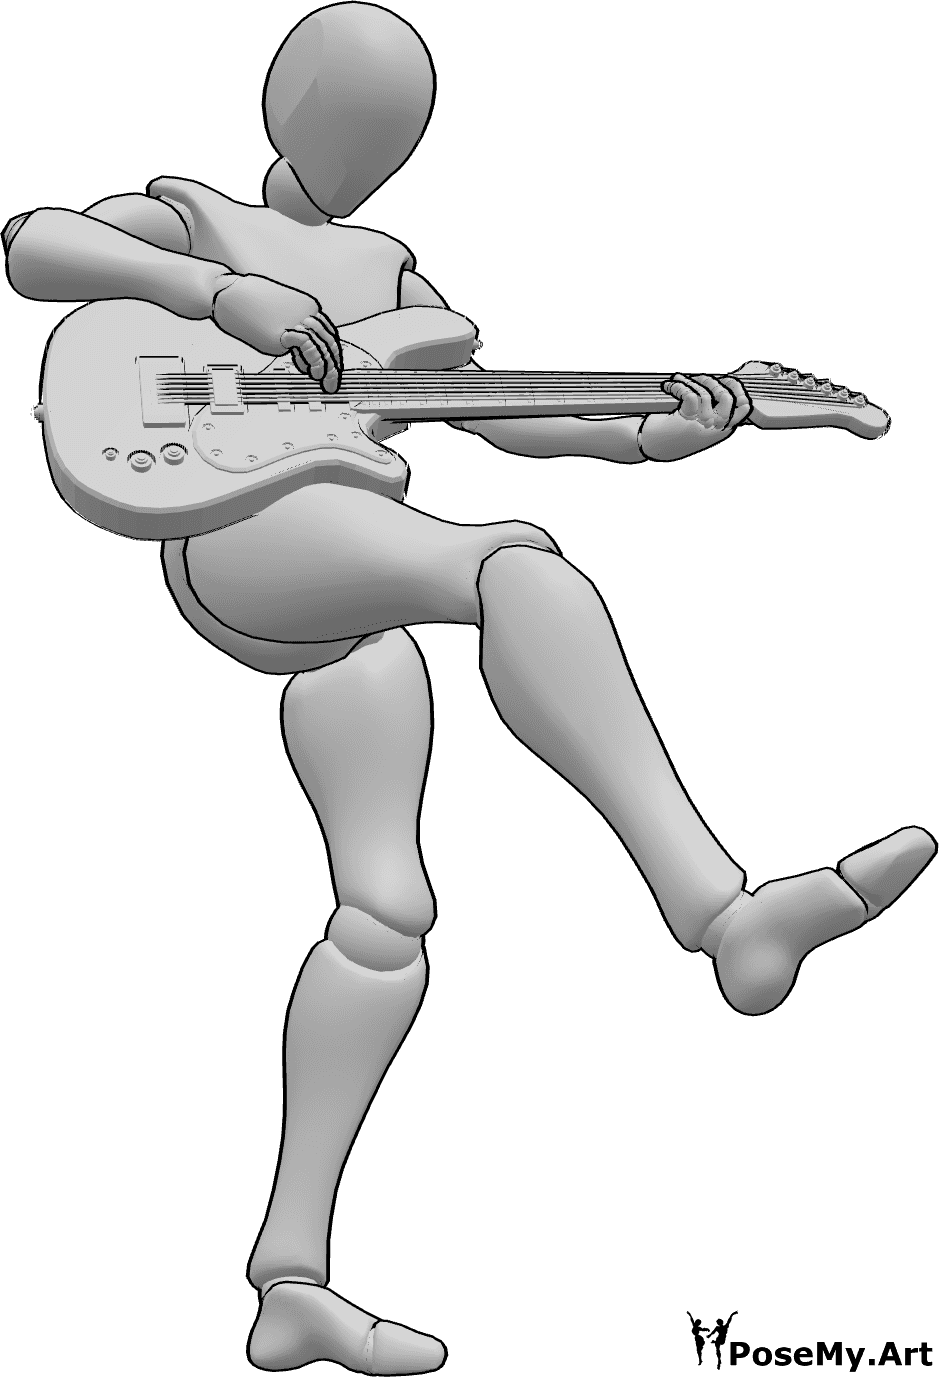 Référence des poses- Femme dansant et jouant la pose - Femme dansant, debout sur le pied gauche et levant la jambe droite tout en jouant de la guitare électrique.